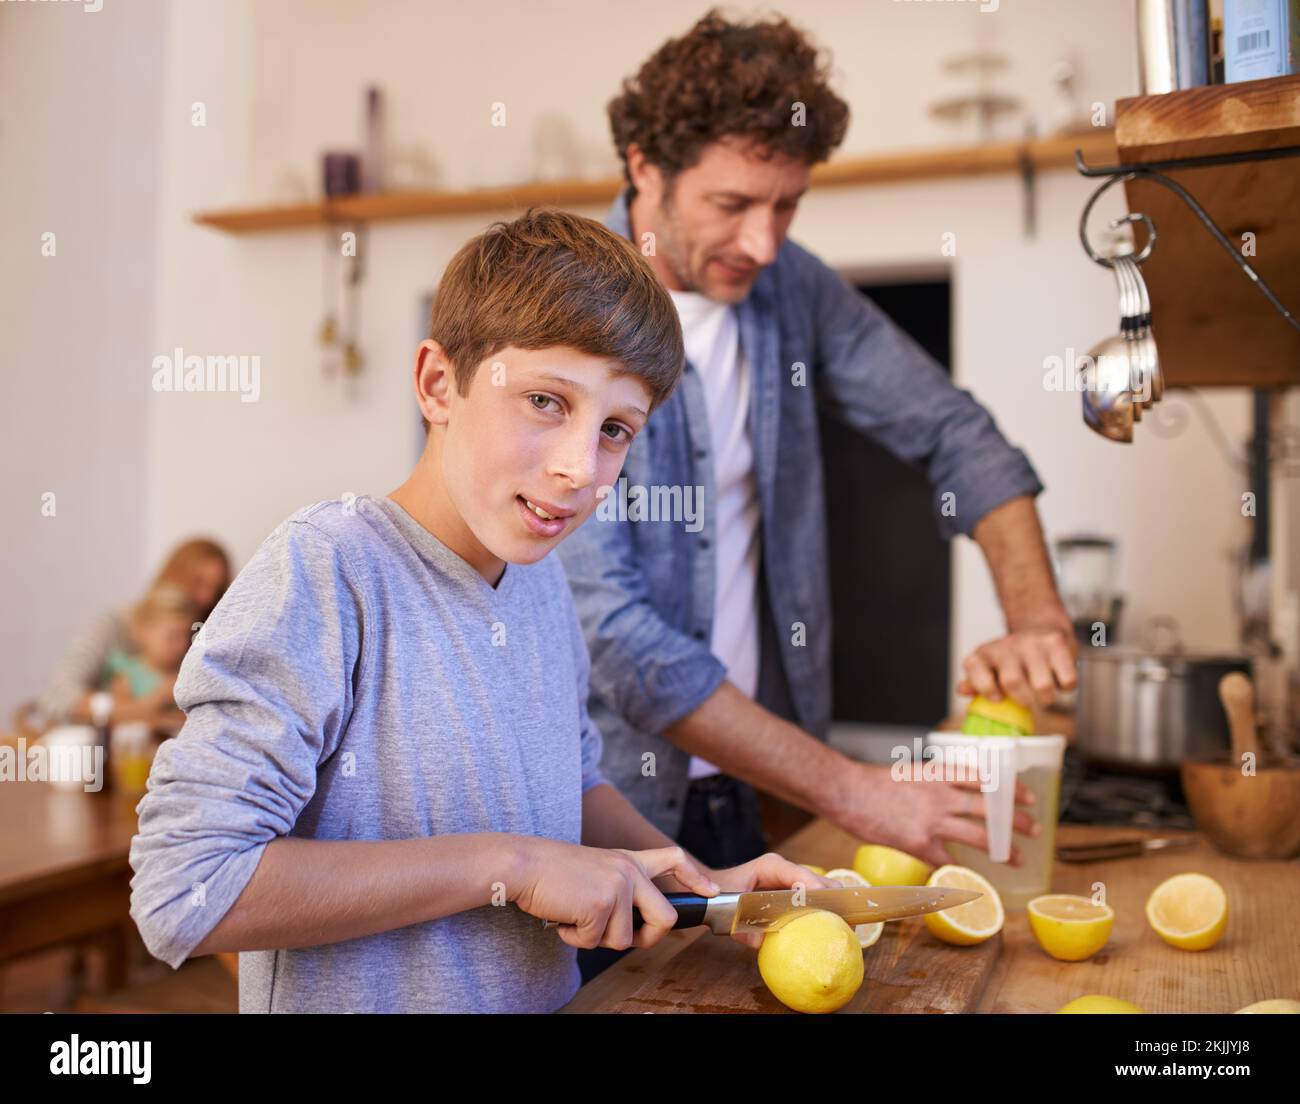 Hacemos la mejor limonada. Un retrato recortado de un niño feliz haciendo limonada con su padre en la cocina. Foto de stock